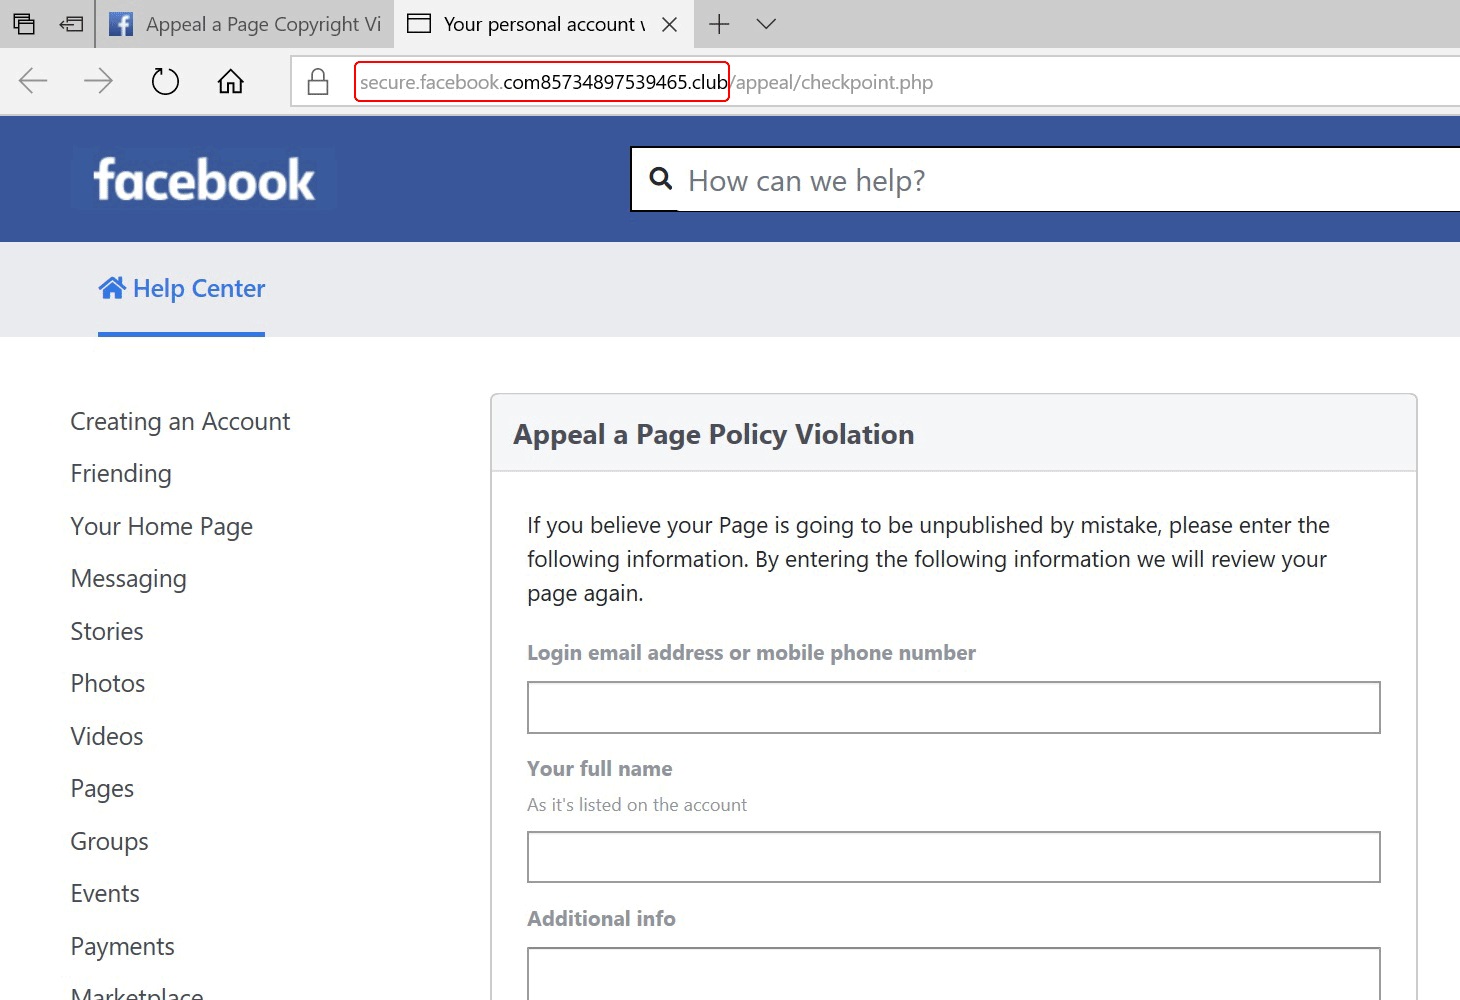 Hati-Hati Penipuan Facebook Ancam Hapus Akun, Ini Tandanya